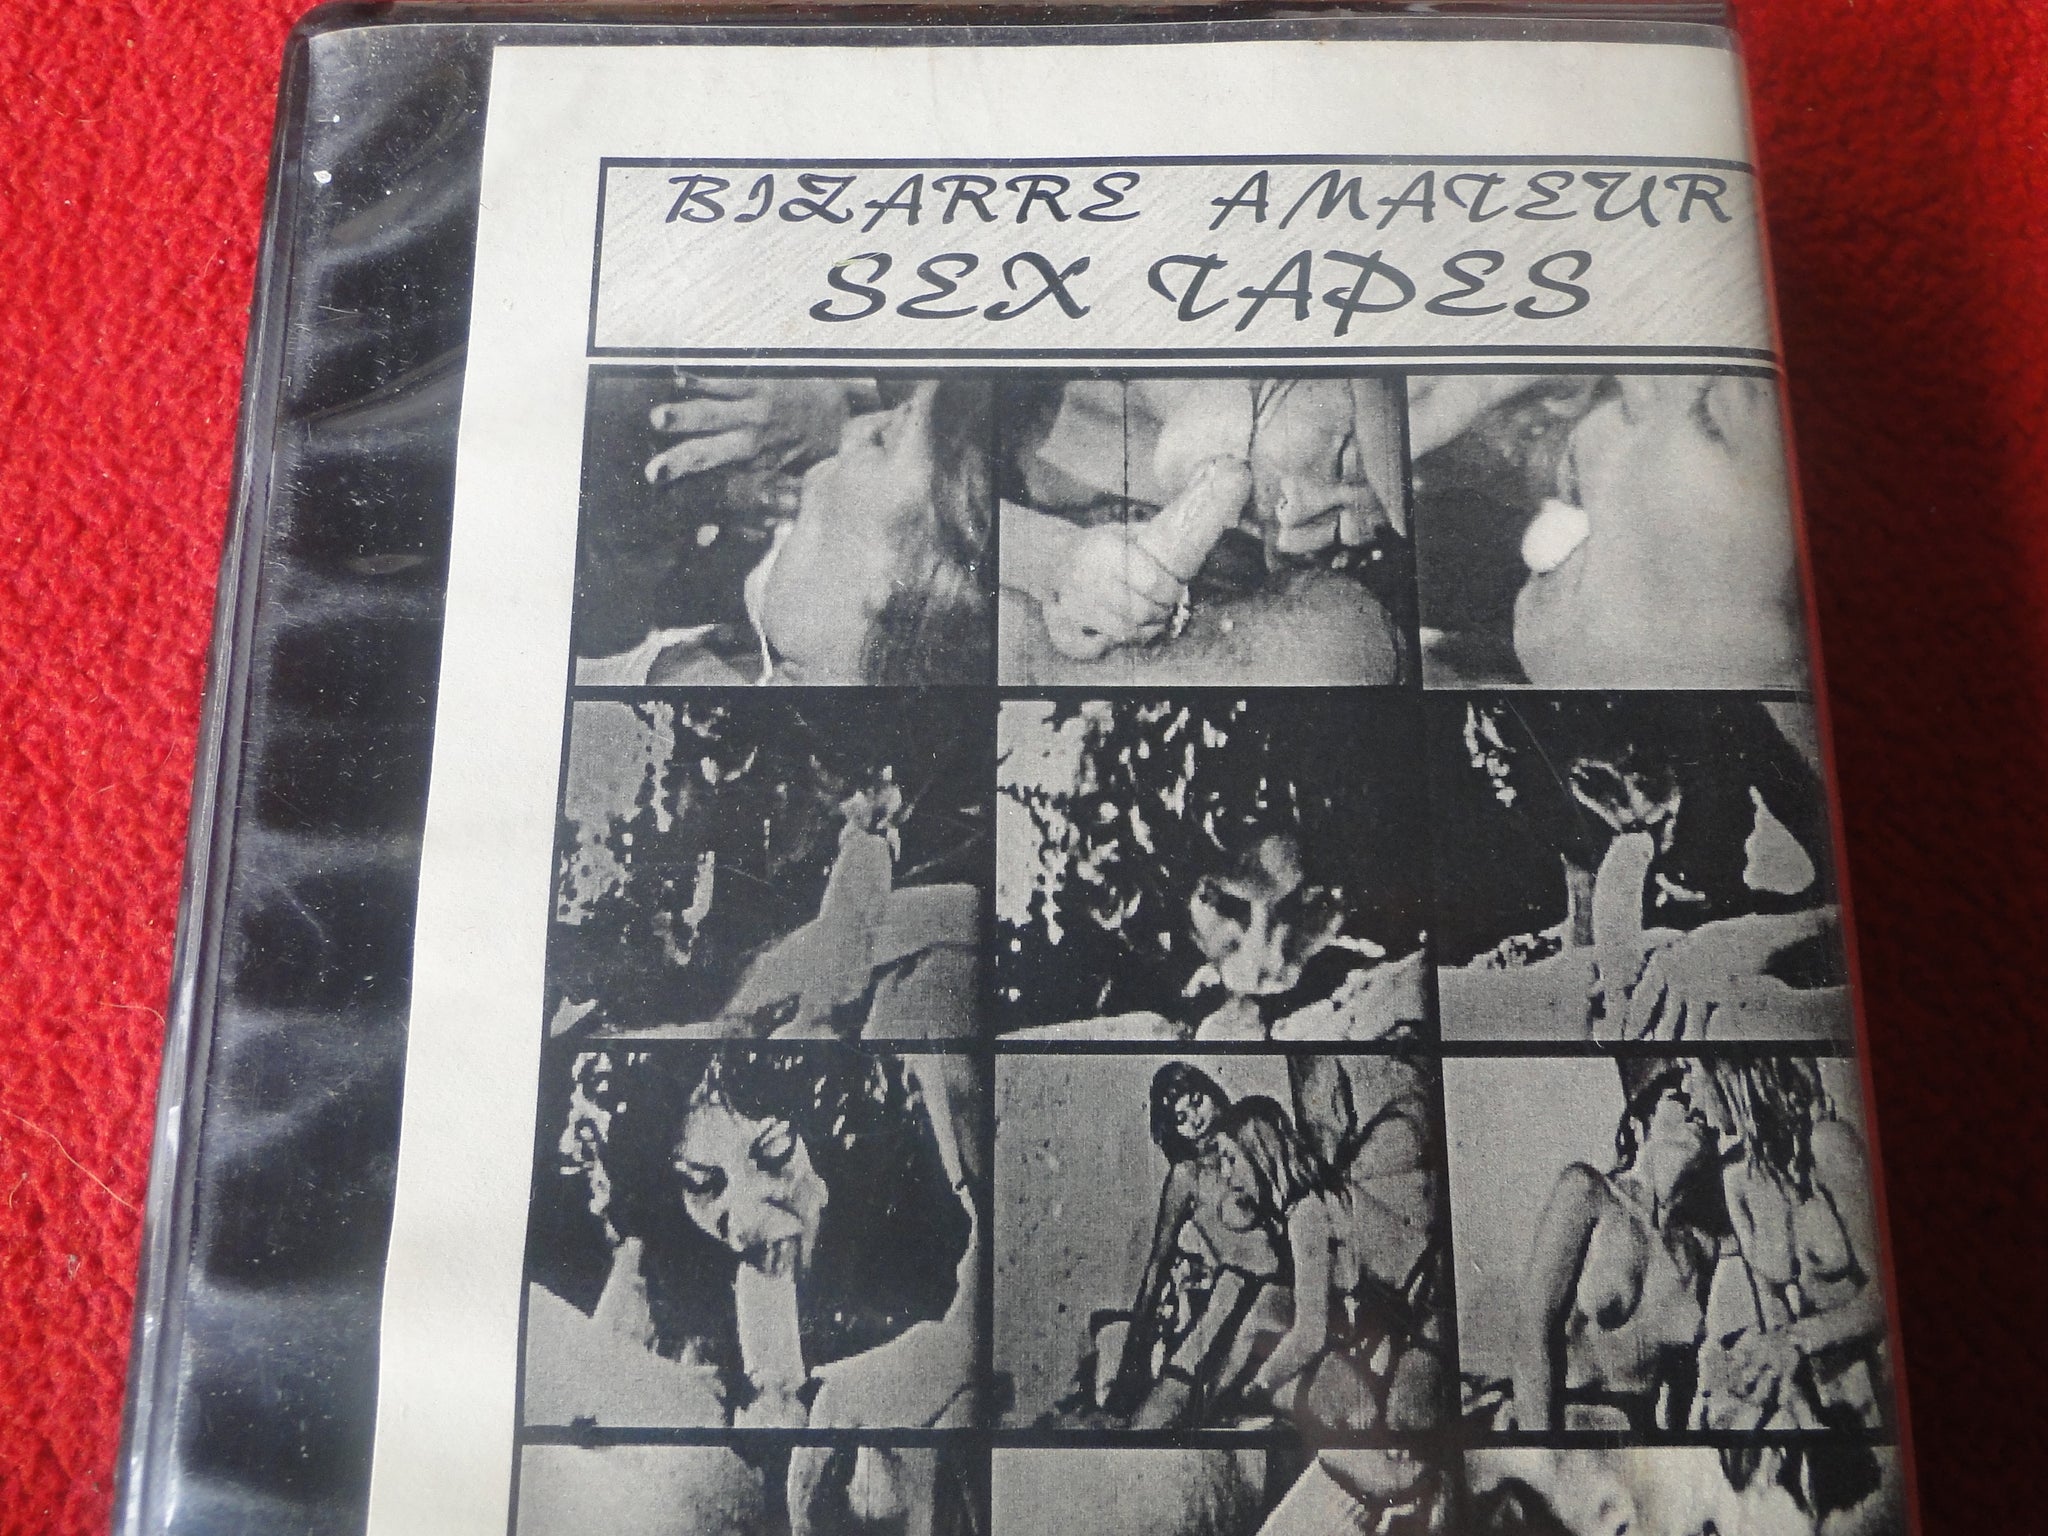 Vintage Adult XXX VHS Porn Tape Bizarre Amateur Sex Tapes Classic Stag photo